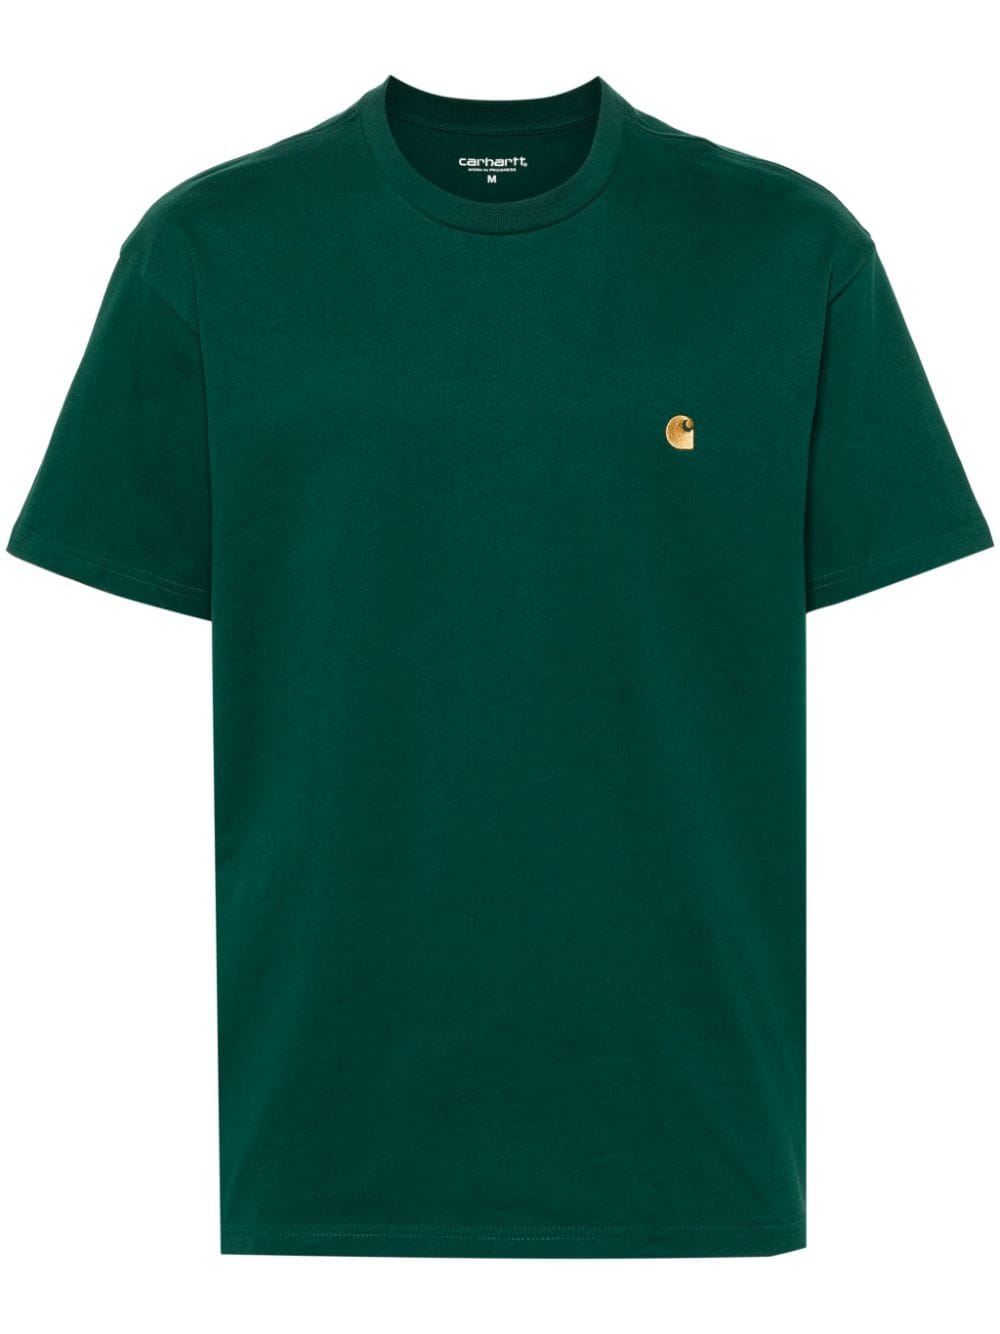 Carhartt WIP Chase cotton T-shirt - Green von Carhartt WIP